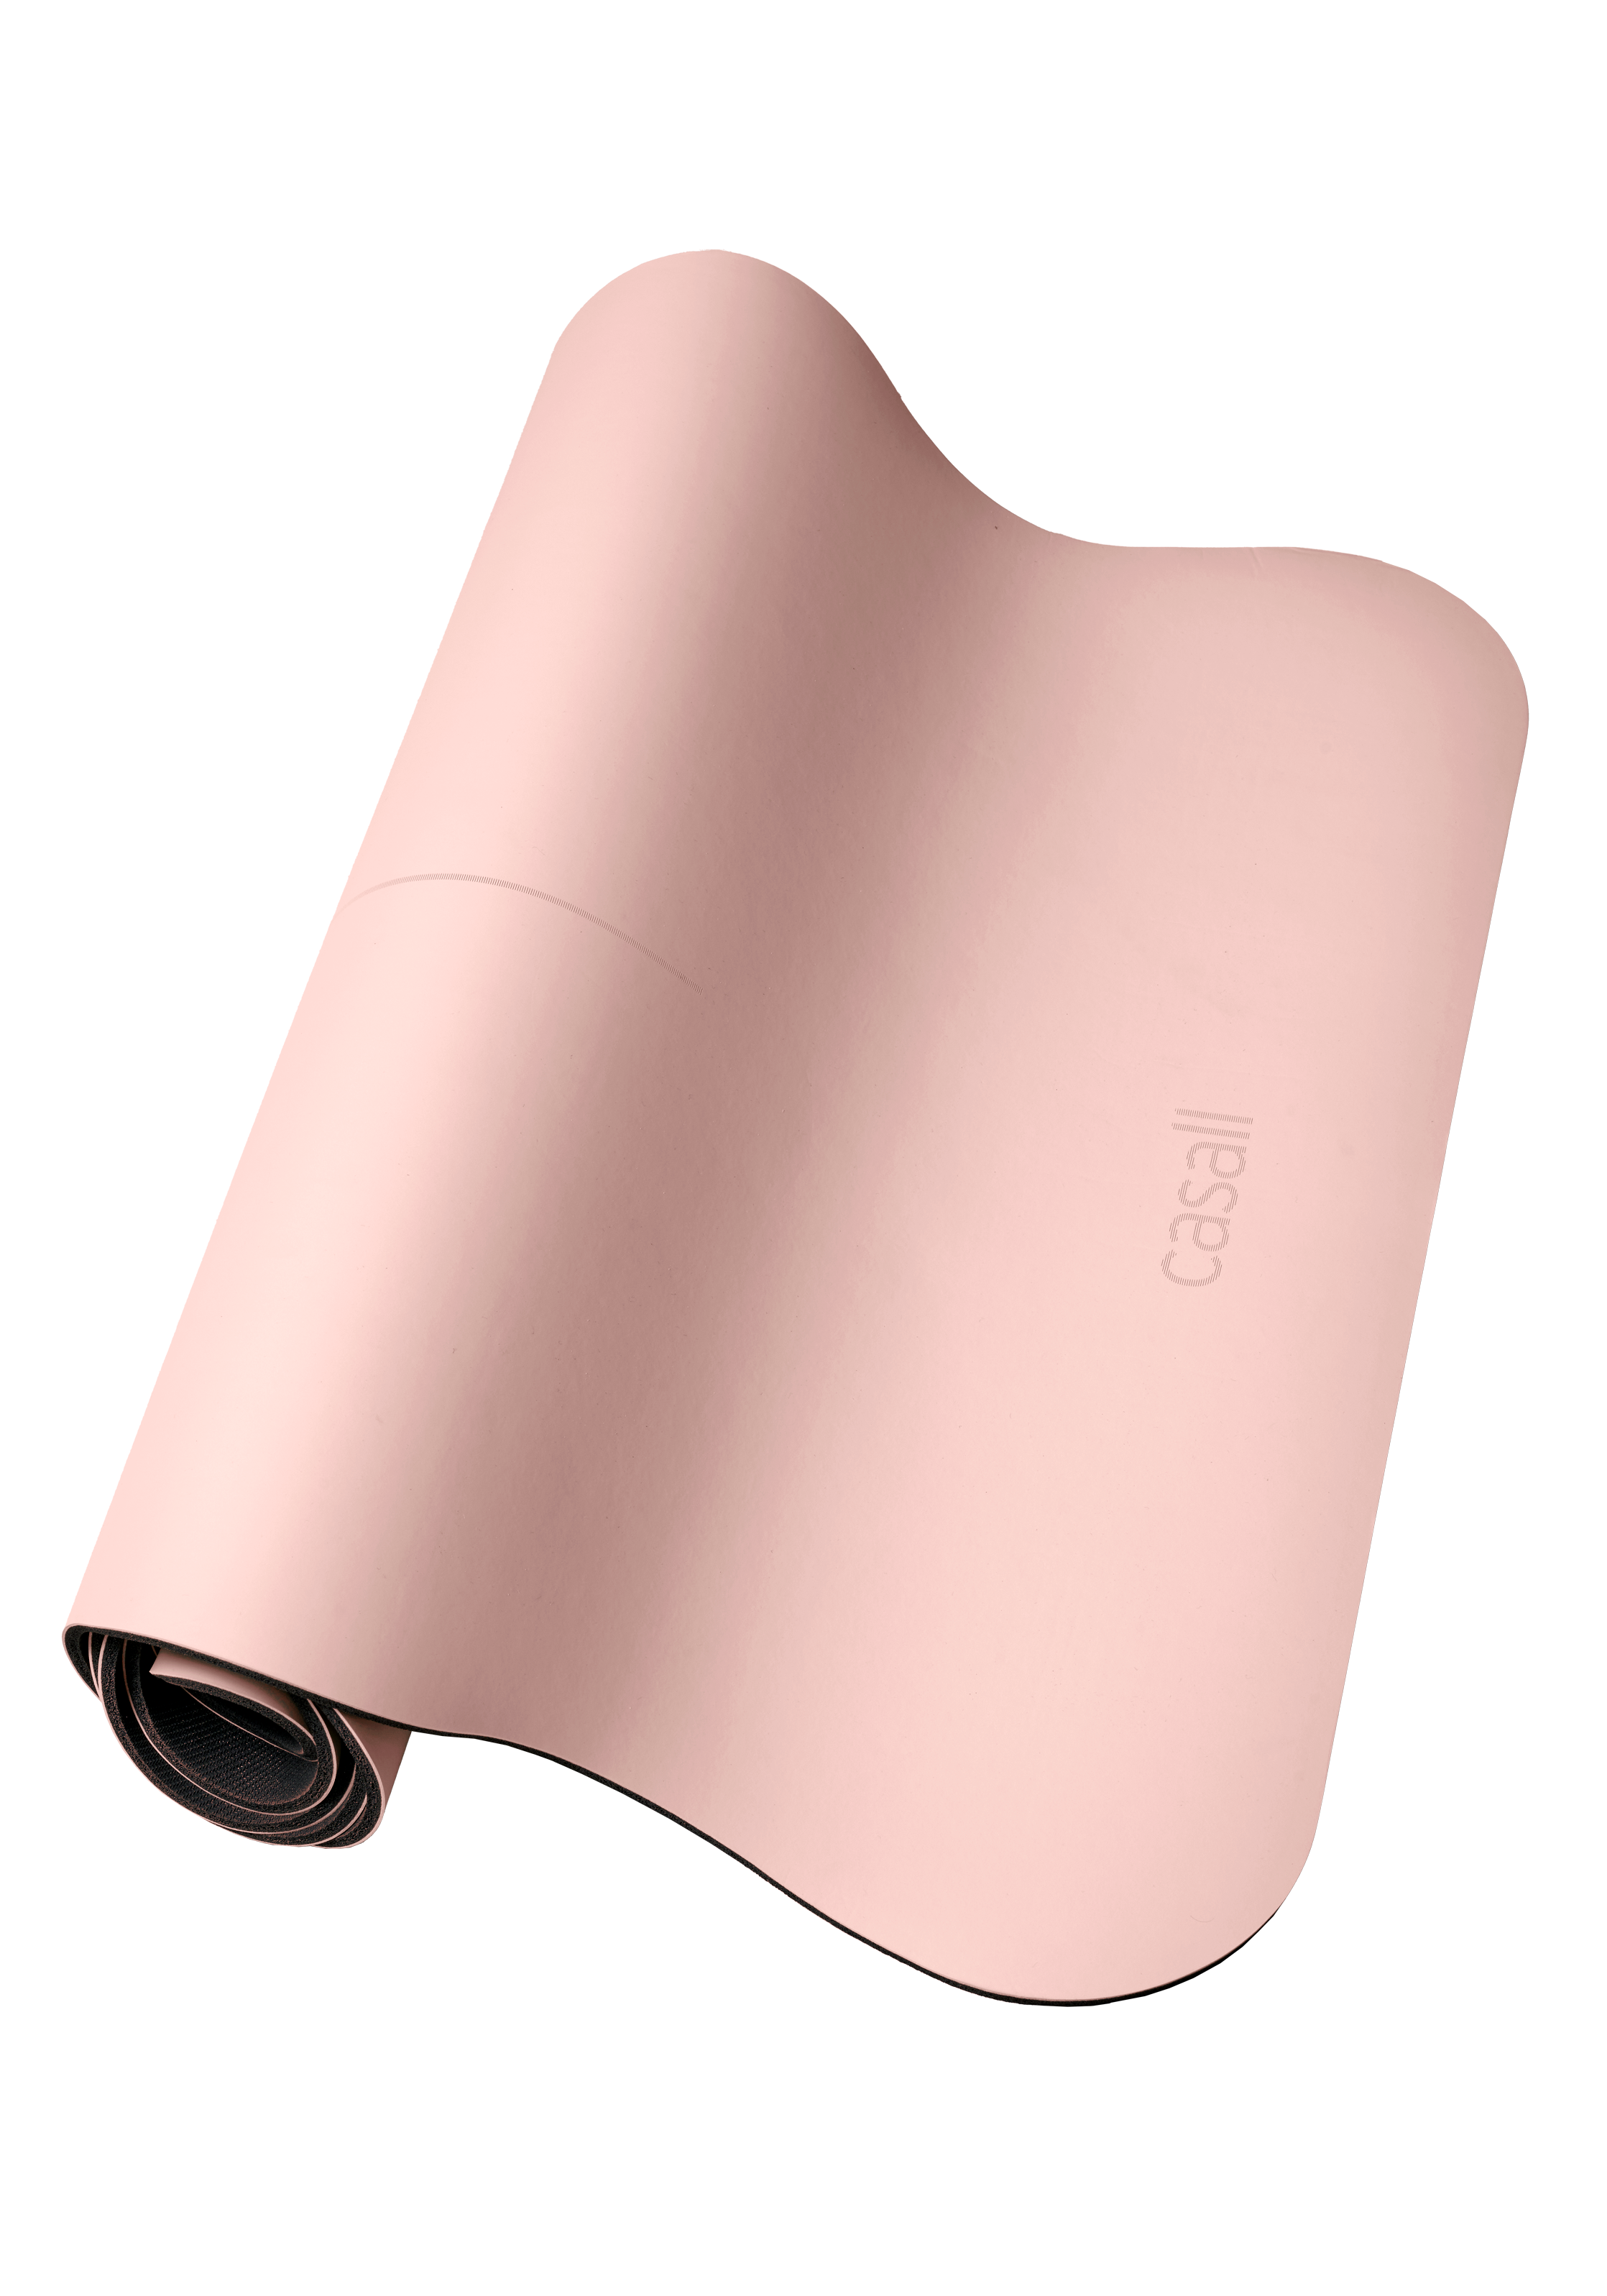 Yoga mat Grip&Cushion III Scallop 5mm Light pink - blp9aij3